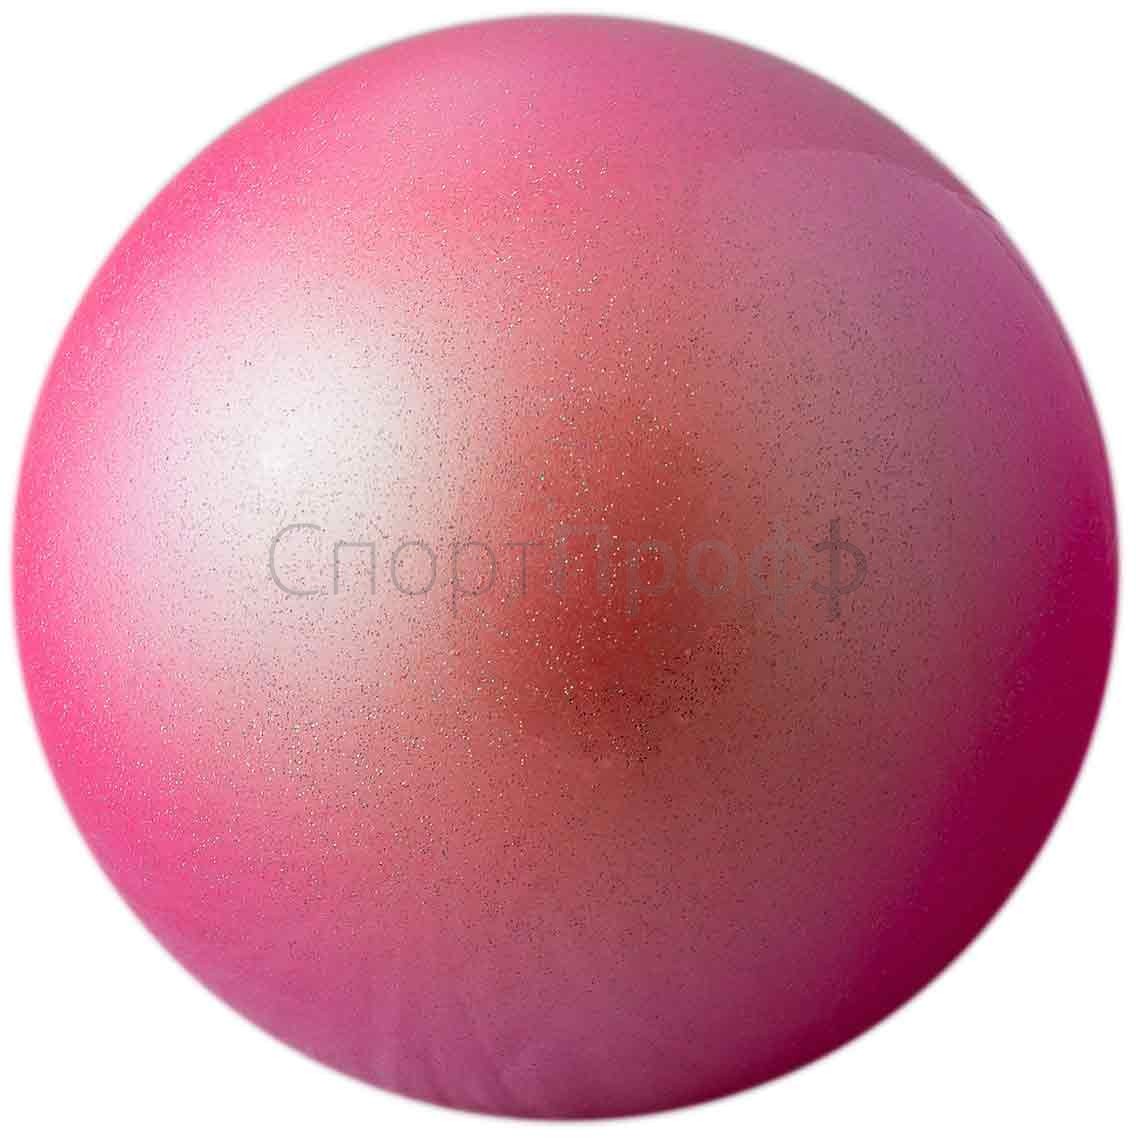 Мяч SASAKI M-207MAU 17 см. CYP (нежно-розовый) для художественной гимнастики